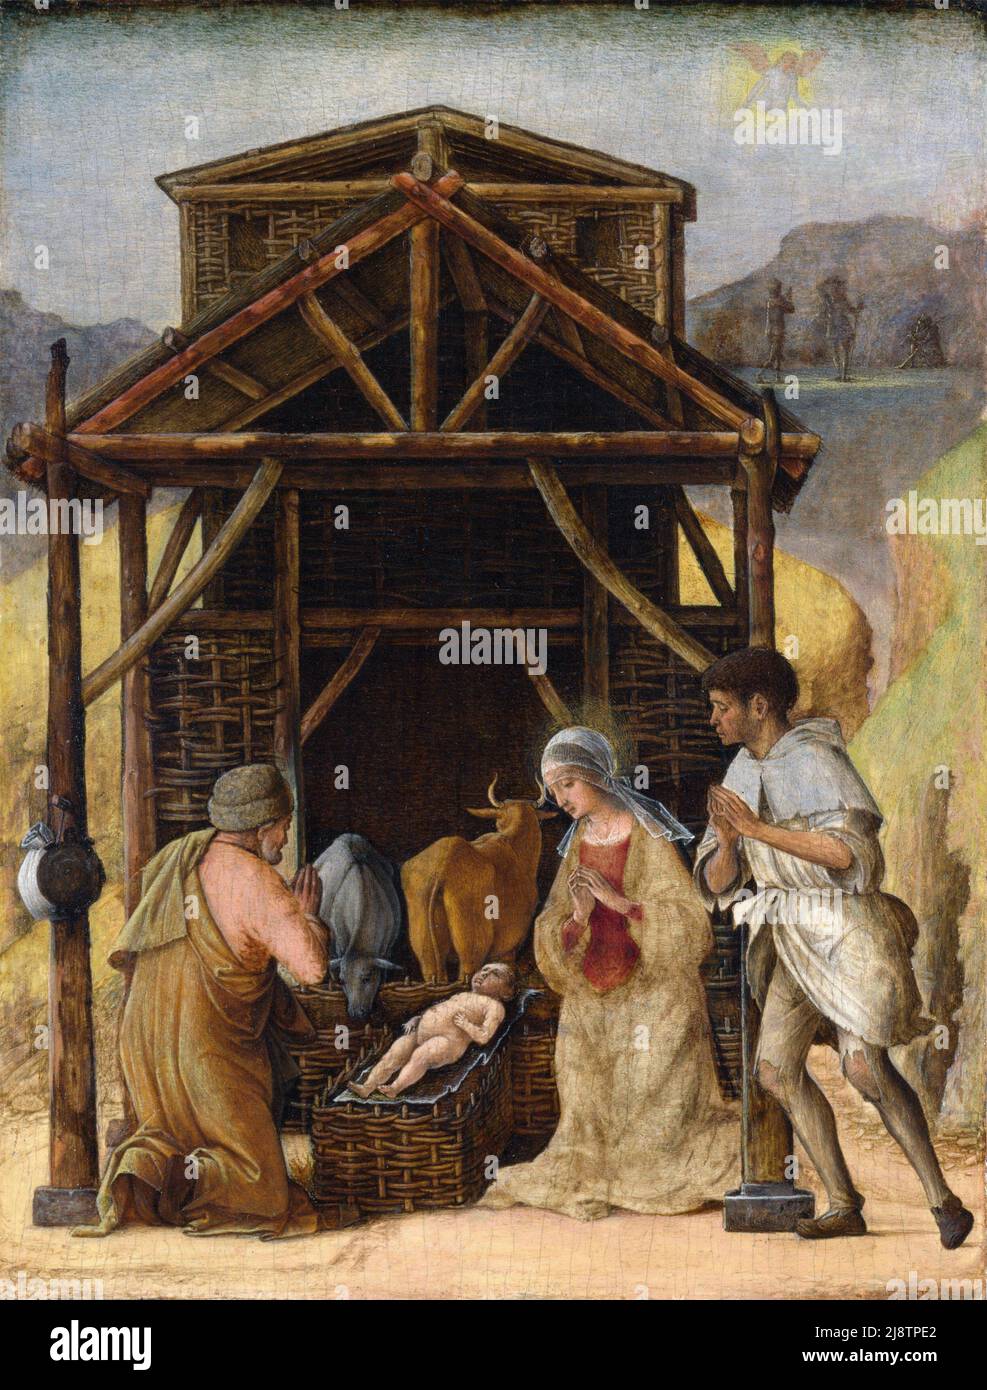 L'Adorazione dei Pastori da parte dell'artista italiano del primo Rinascimento, Ercole de' Roberti (c.. 1451-1496), tempera su legno, c. 1490 Foto Stock